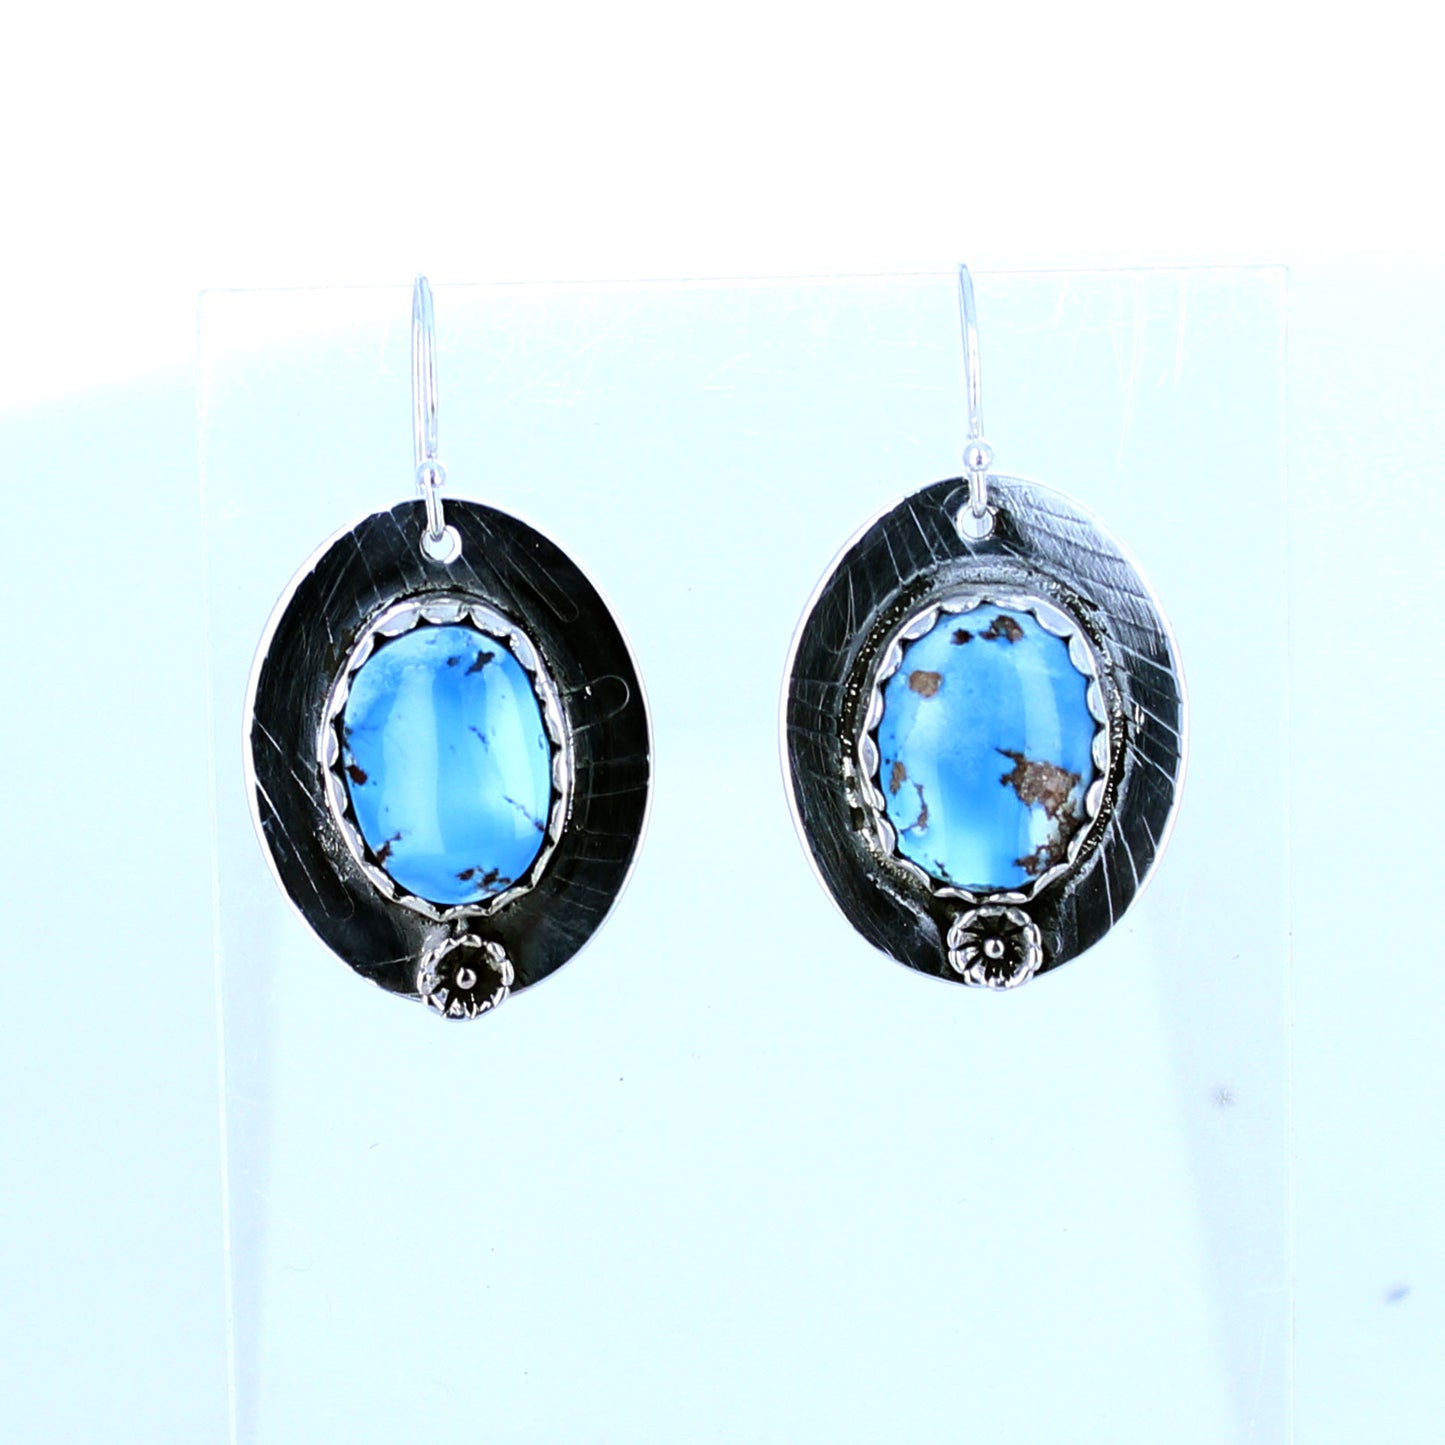 Kazakhstan Turquoise Earrings Oval Patterned Sterling Silver -NewWorldGems